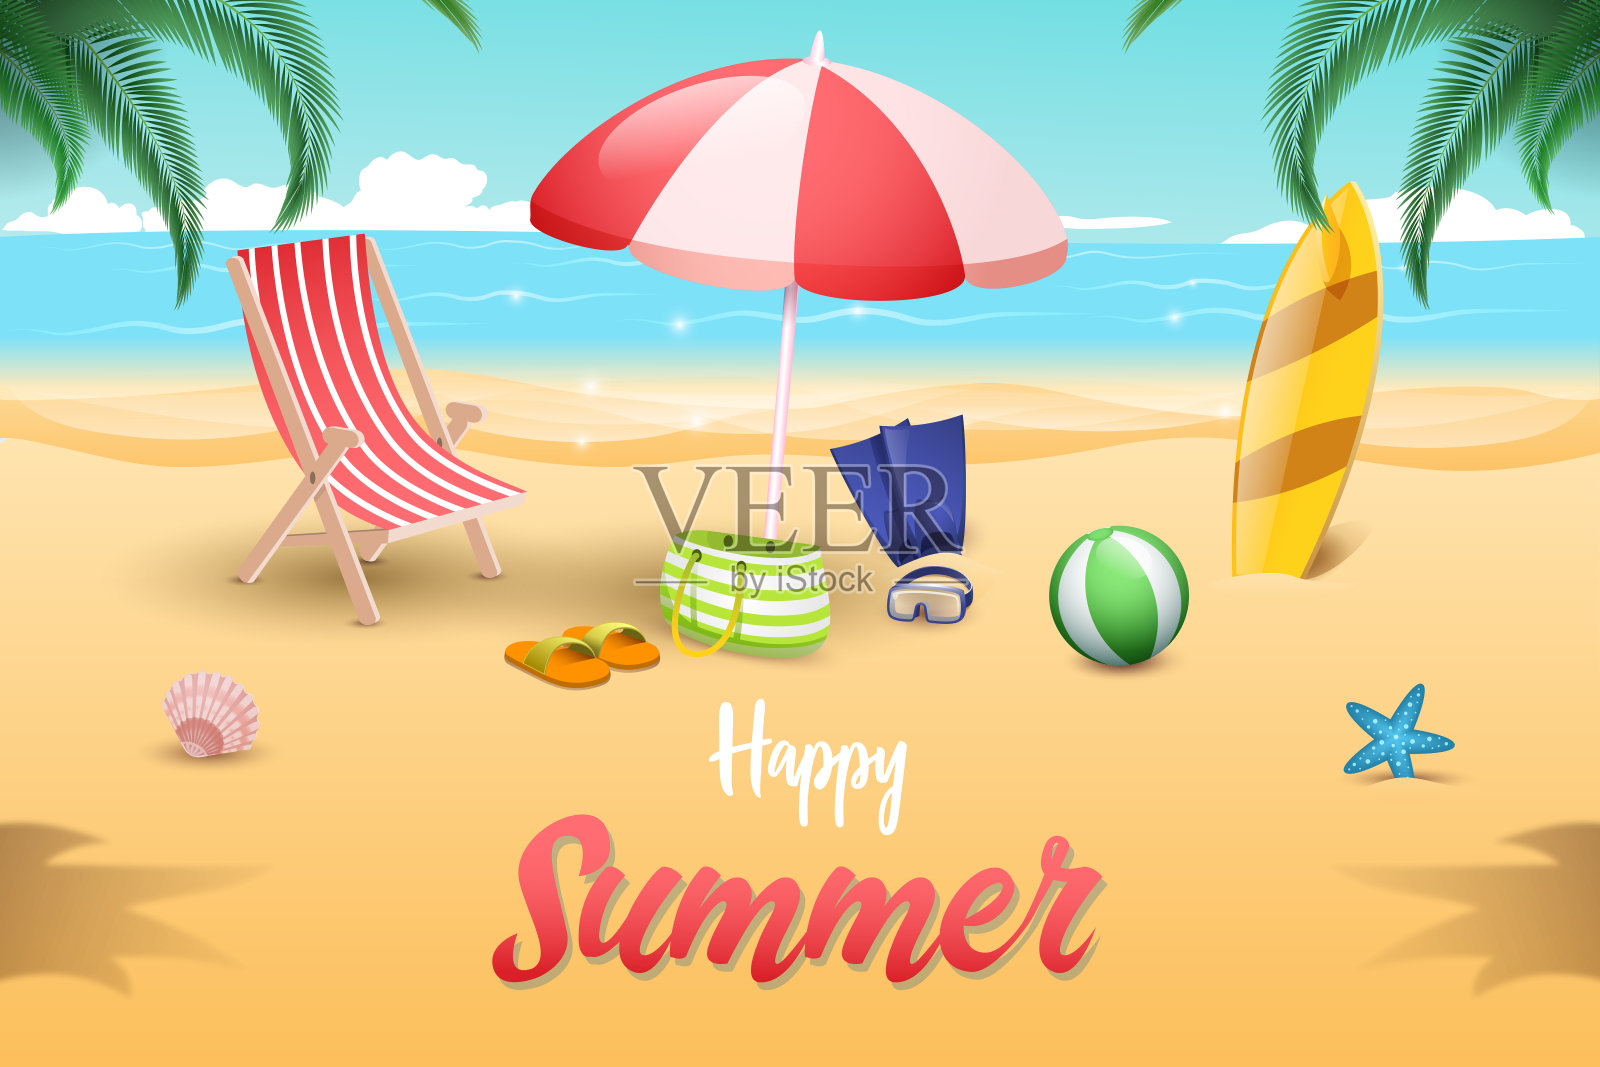 放松的海滩 库存照片. 图片 包括有 沙子, 夏天, 服装, 海滩, 浴巾, 假期, 蓝色, 色土, 节假日 - 58213896